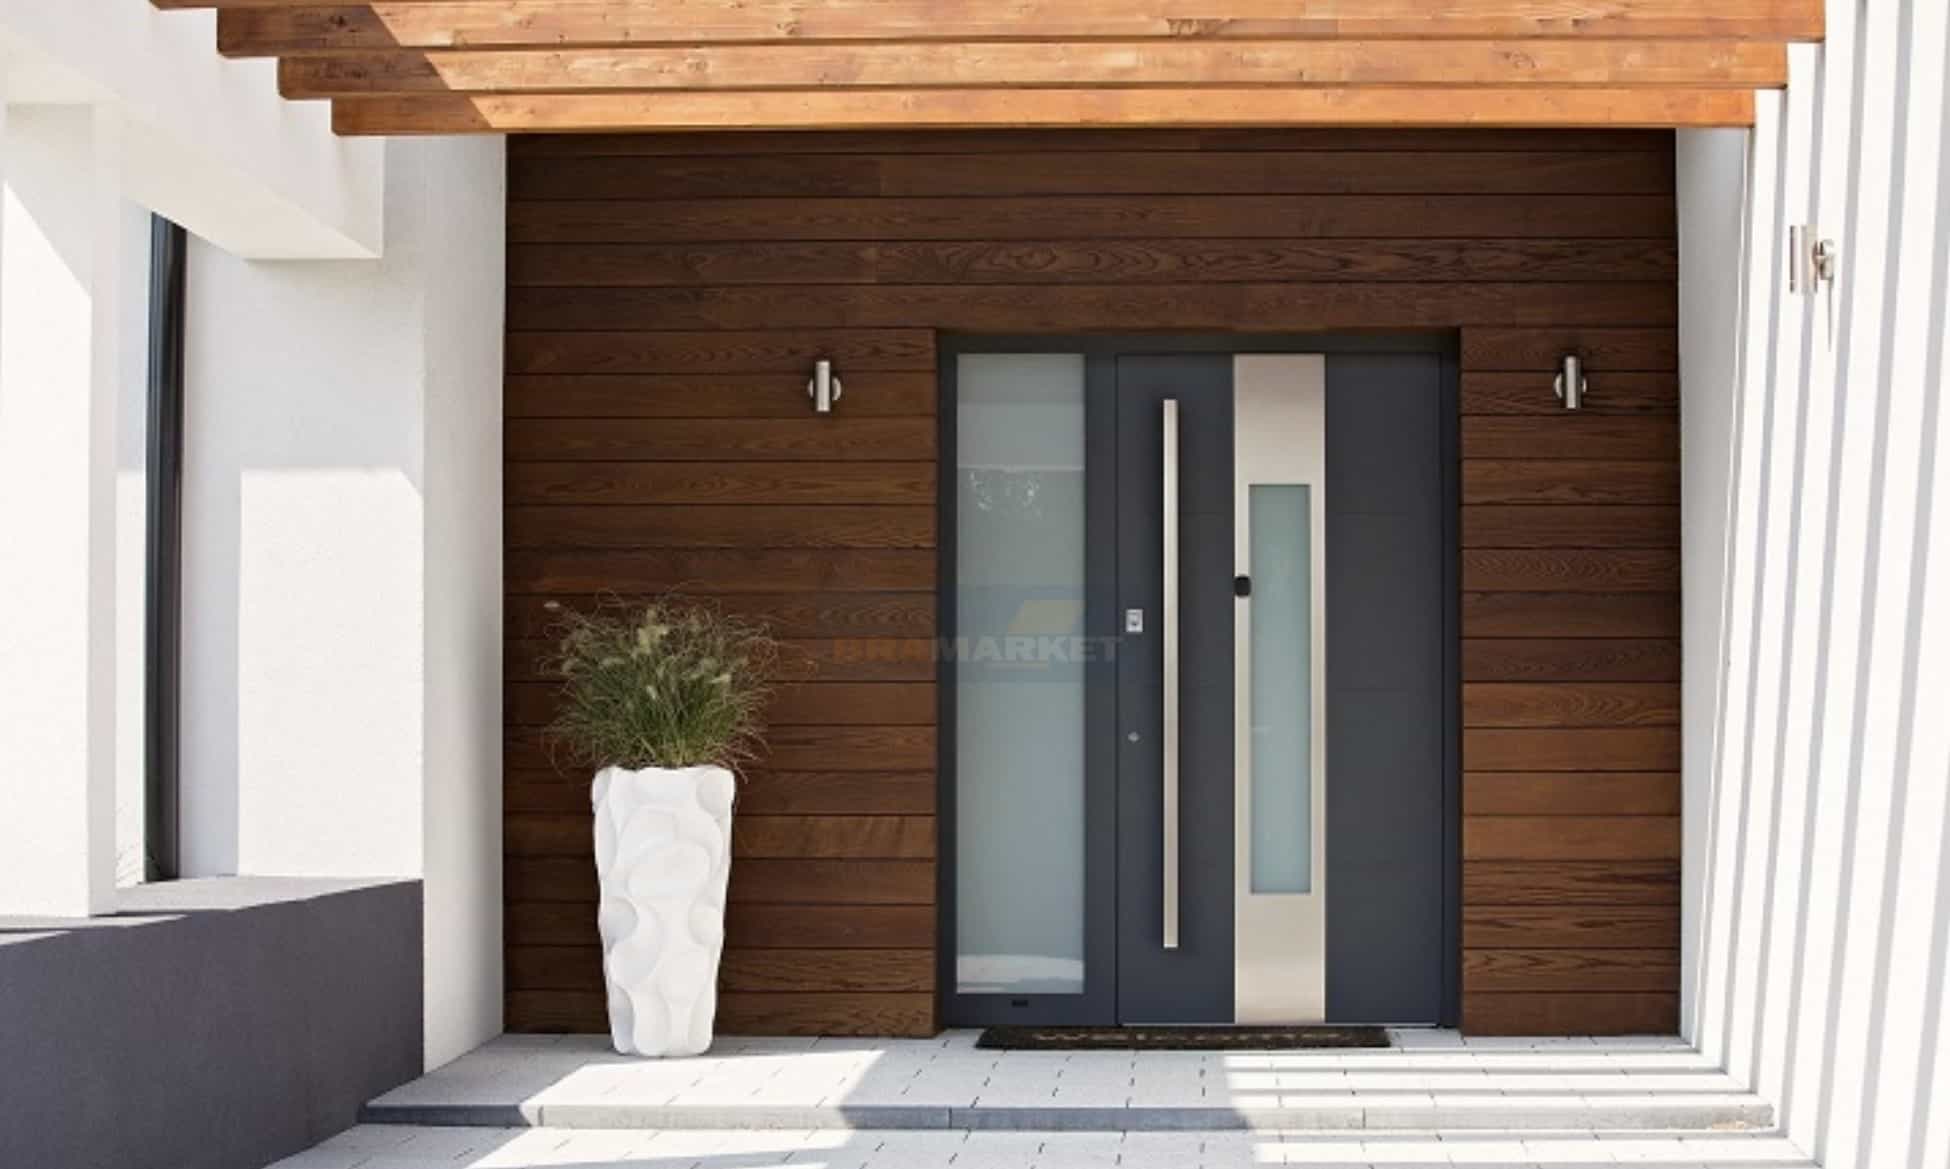 сучасні теплі двері - алюмінієві зовнішні системи для приватного будинку - виробник WISNIOWSKI